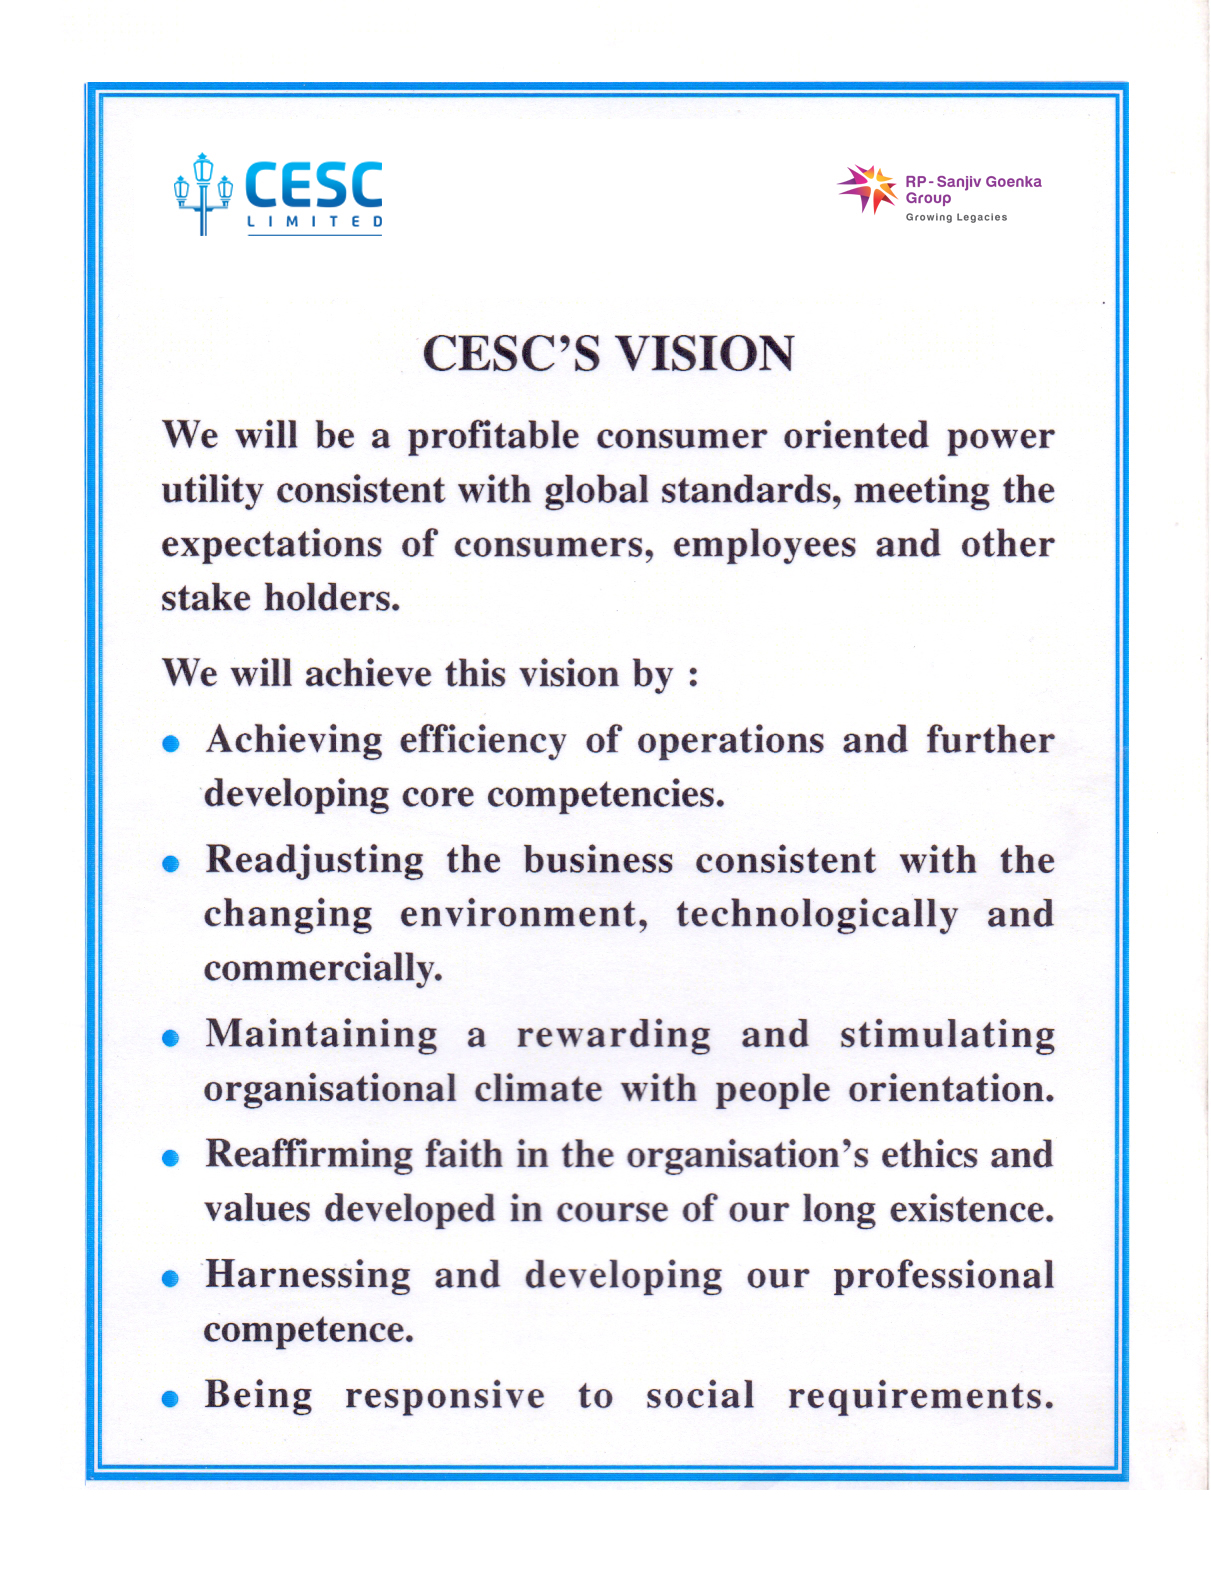 CESC Vision